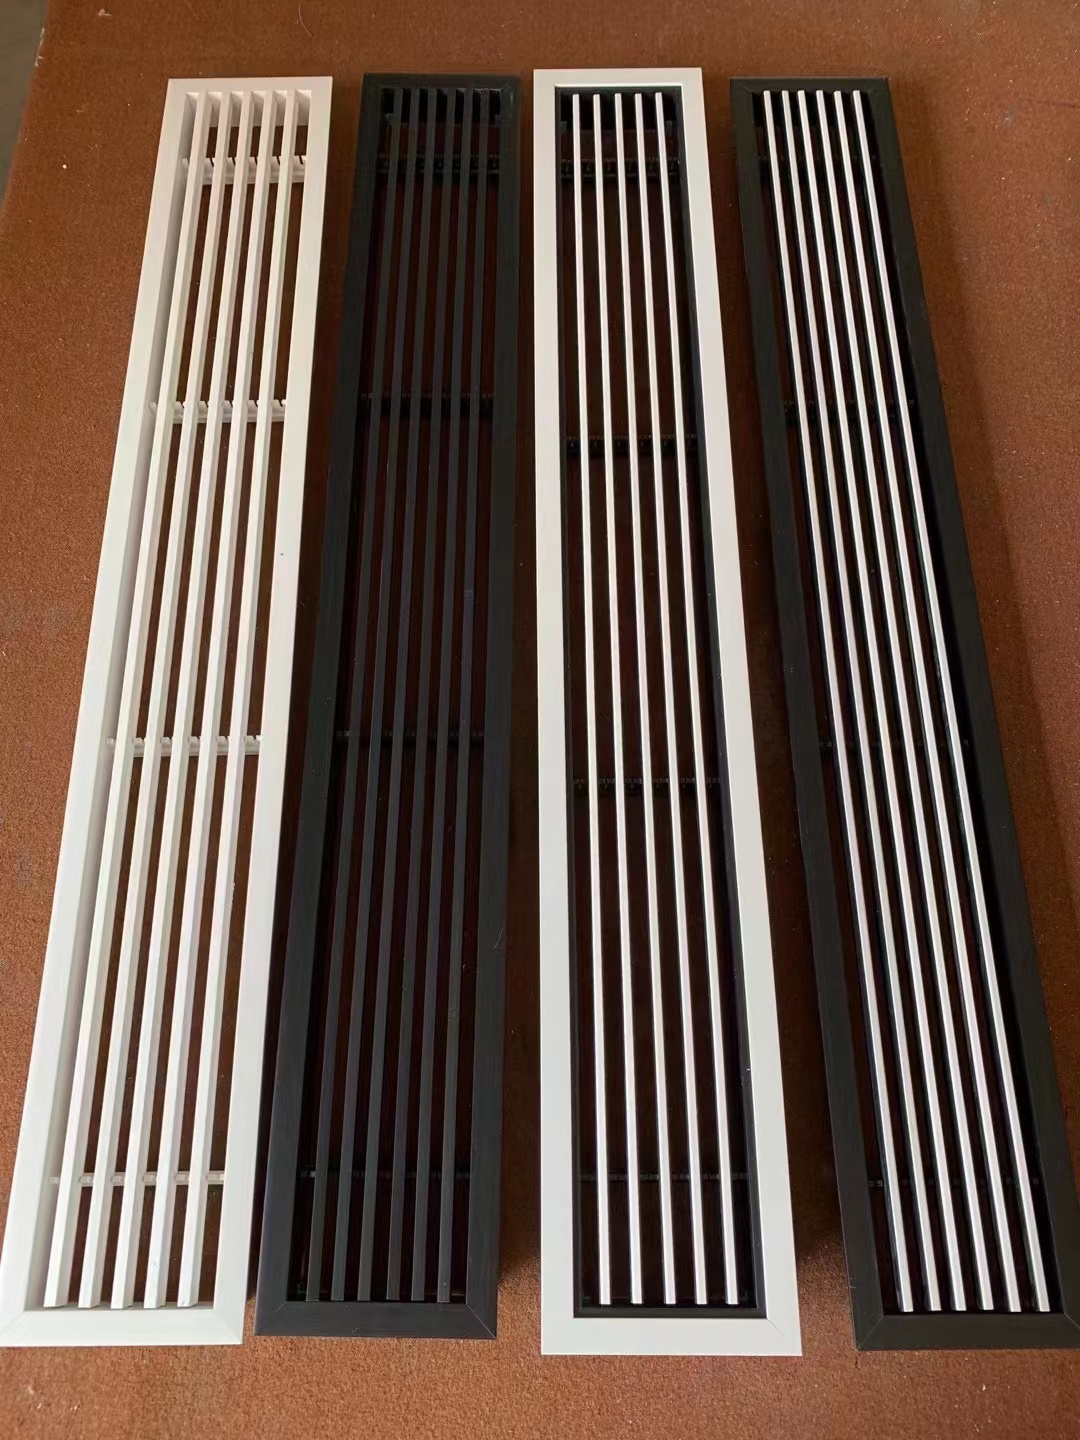 武汉市ABS窄边框风口厂家工厂自营ABS窄边框风口批发价格、中央空调ABS窄边框风口供应商